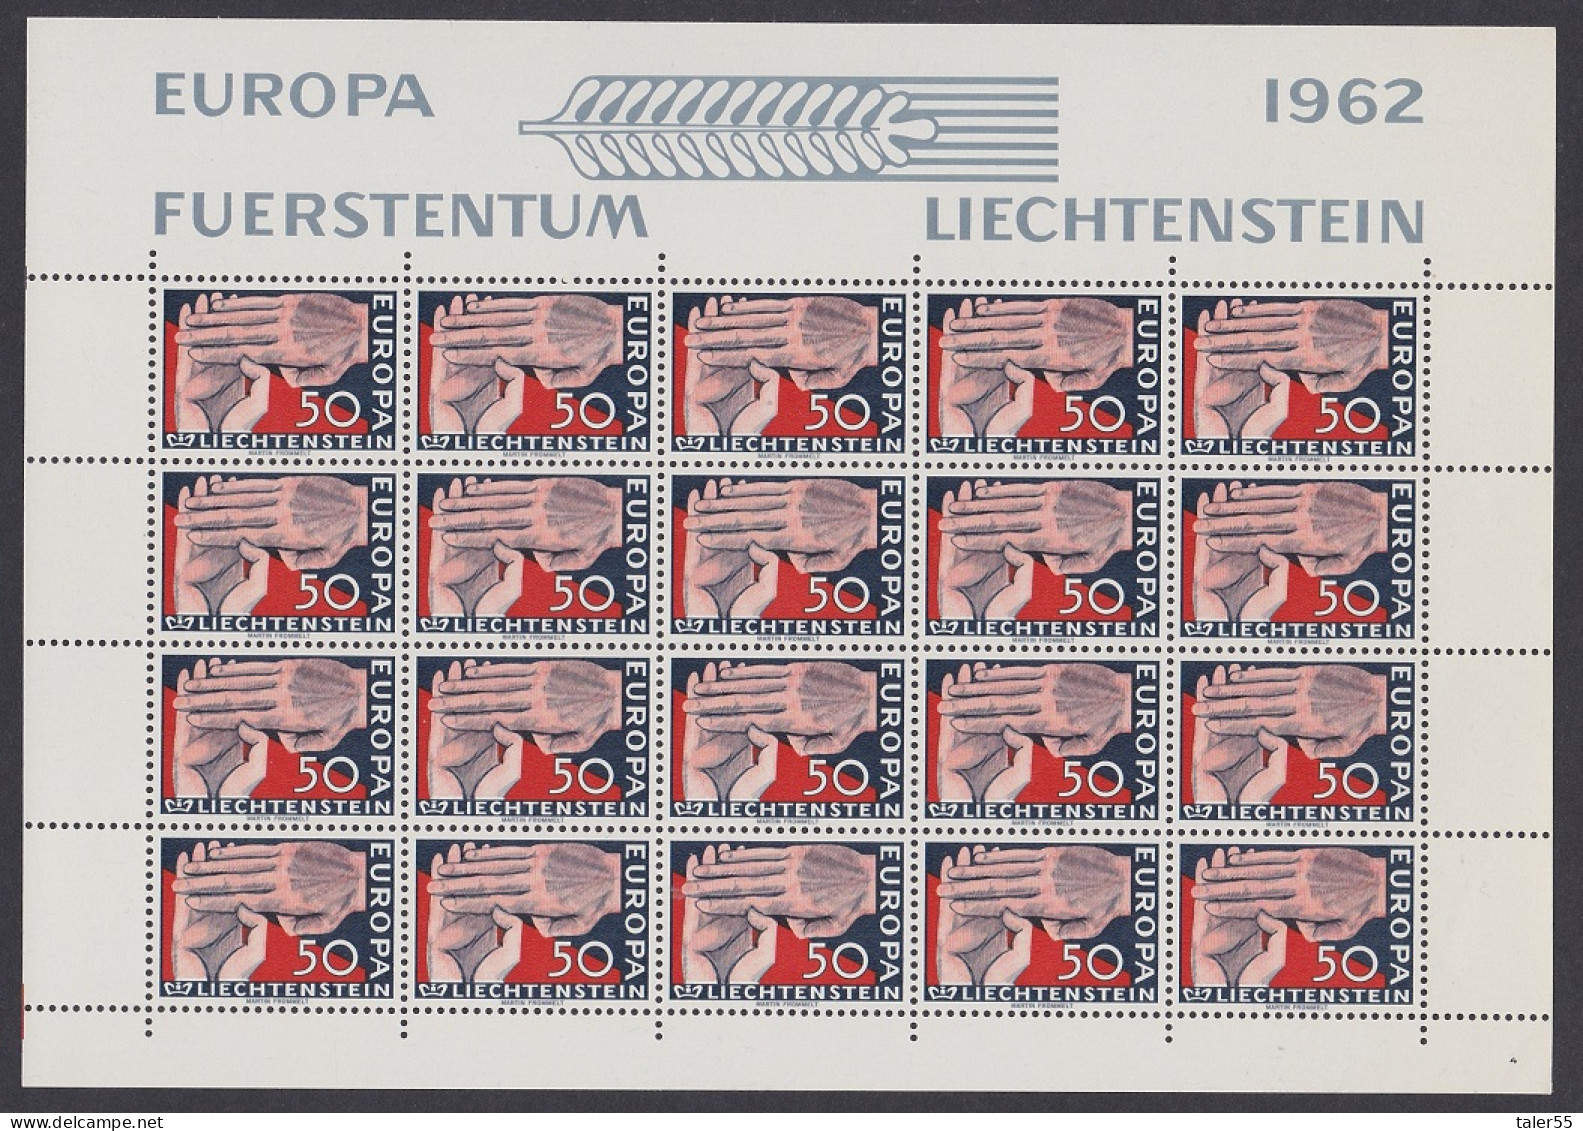 Liechtenstein Clasped Hands Europa 1c Full Sheet 1962 MNH SG#413 Sc#370 - Nuovi